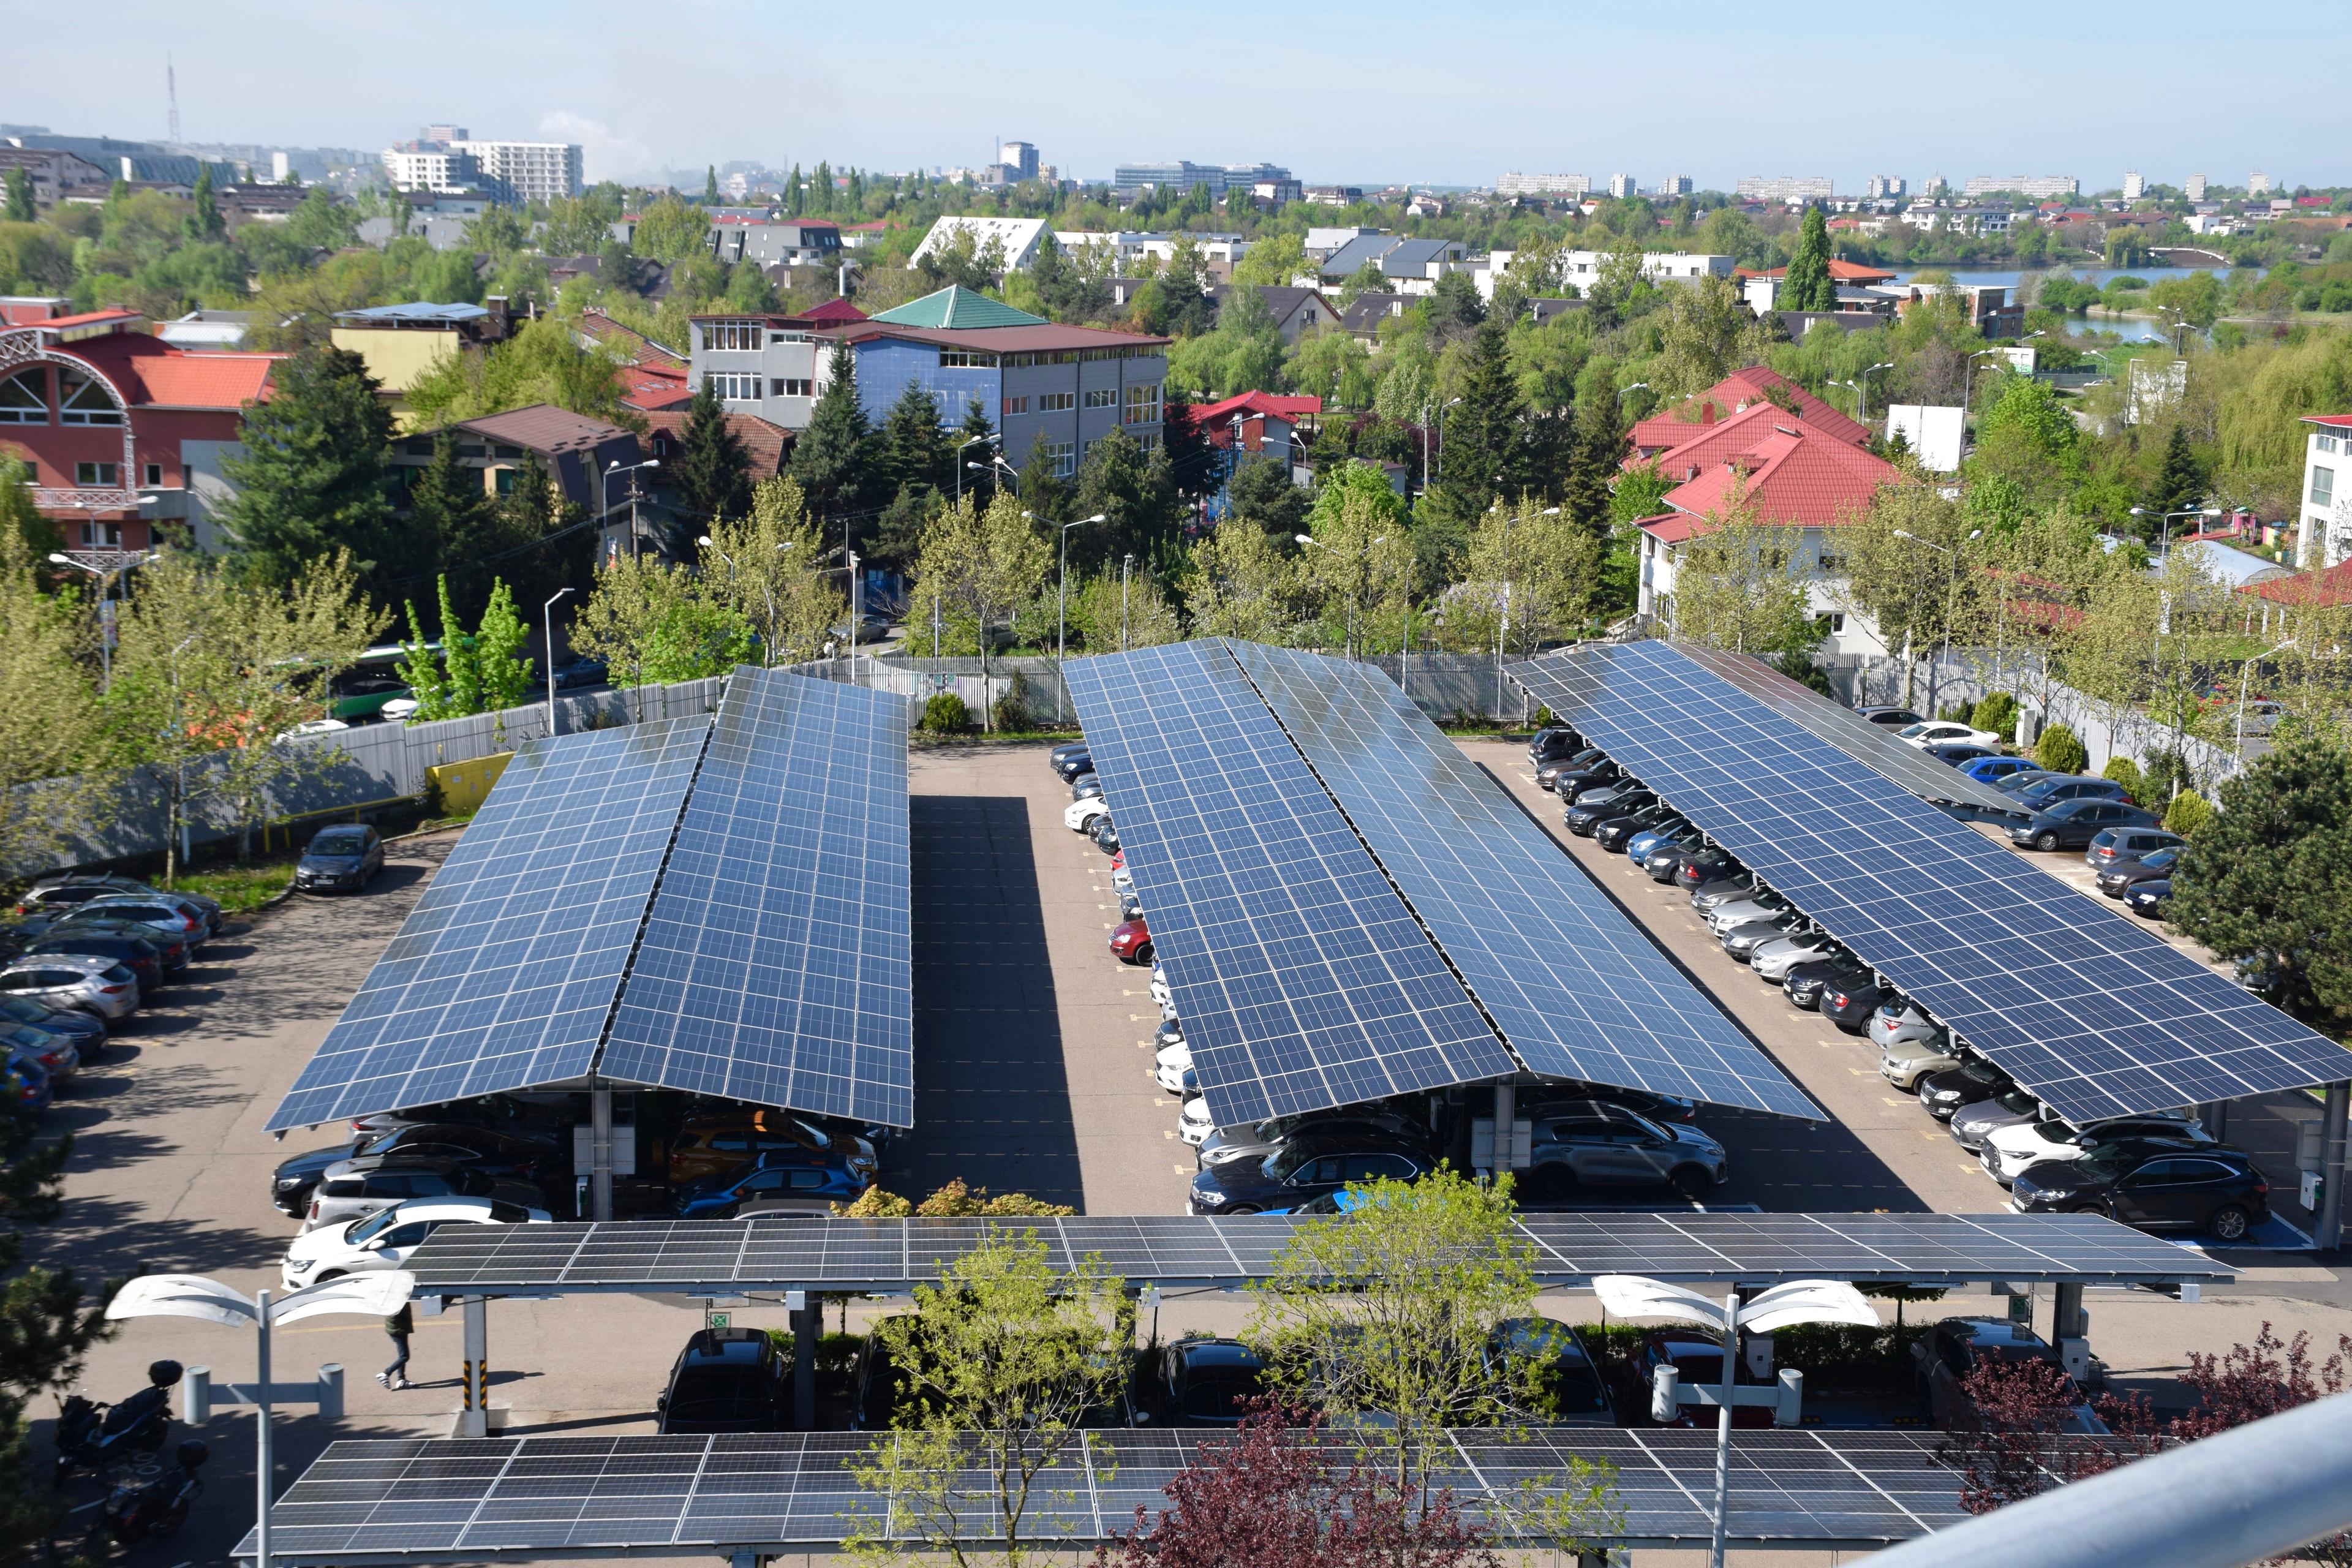 Three rows of solar panels providing shade for cars